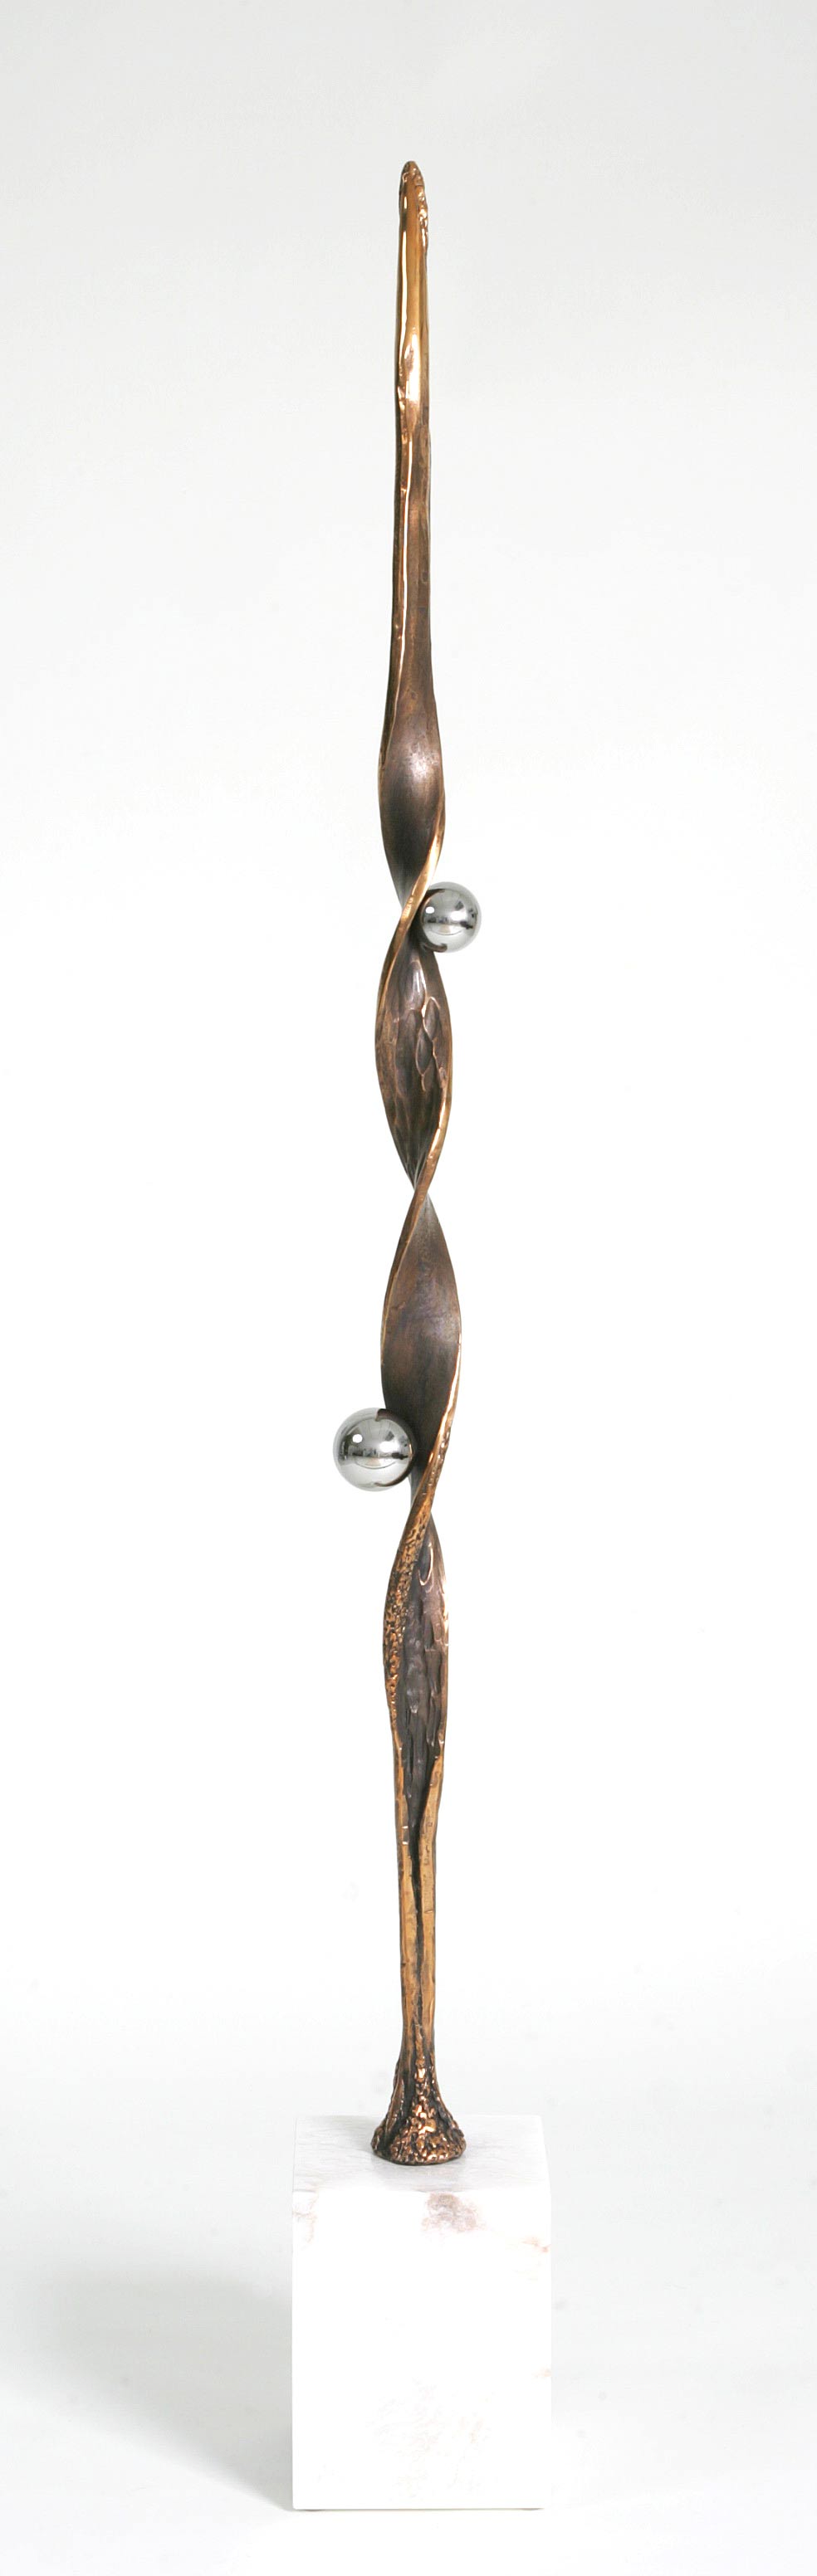 Kunstguss Bronze auf Alabaster - Preis: CHF 10'000.00